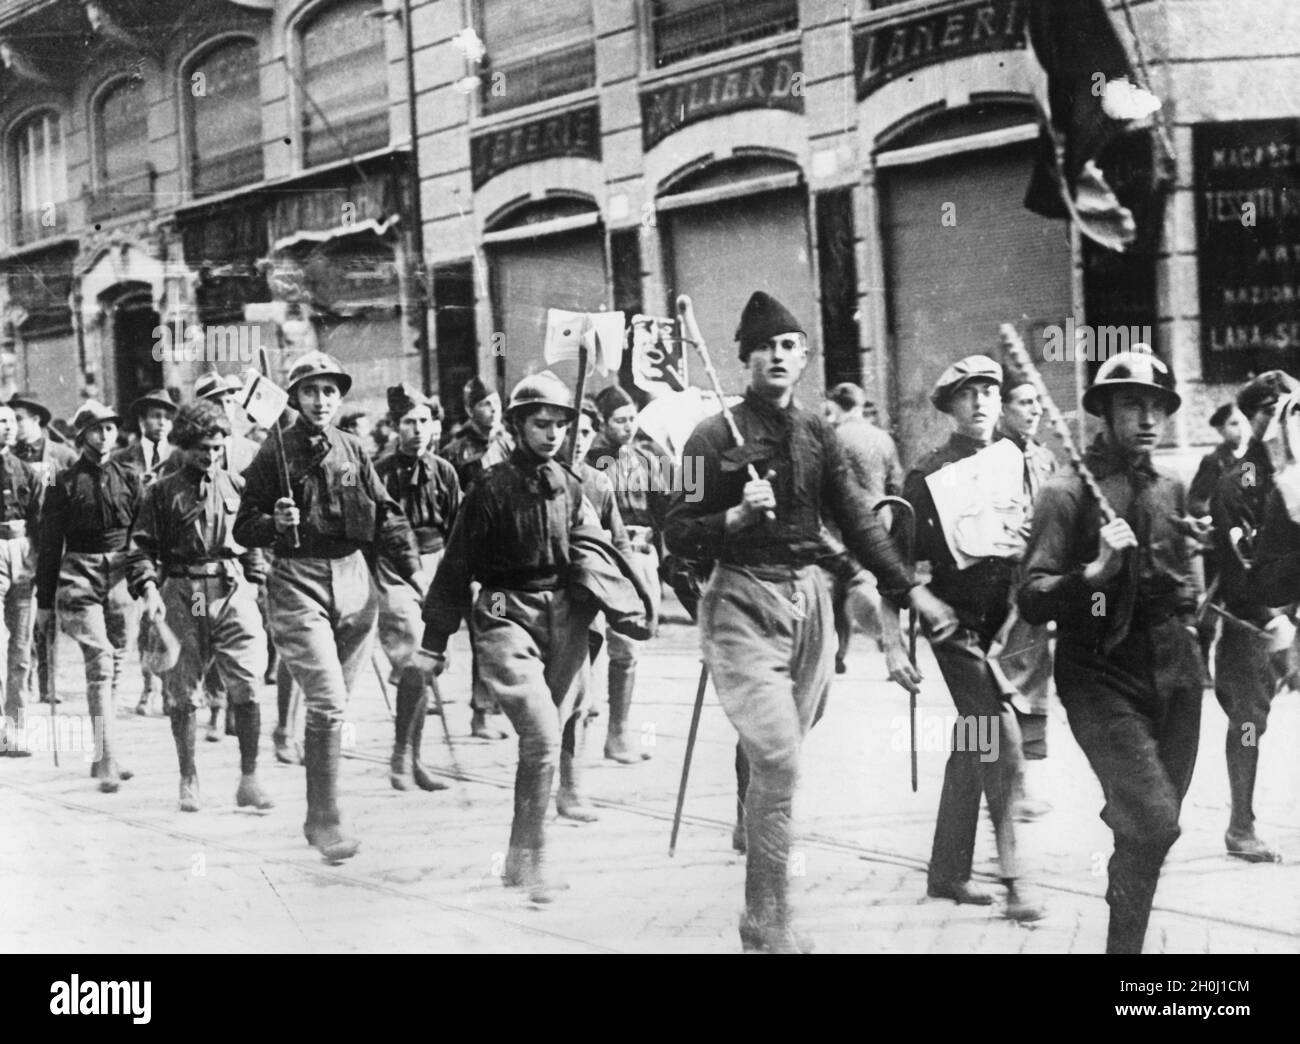 'Fascist Blackshirts marciare attraverso una strada in una città italiana il 22 ottobre 1922, armati di caschi e club. Alla fine di ottobre si è svolta la "Roma" di Mussolini. [traduzione automatizzata]' Foto Stock